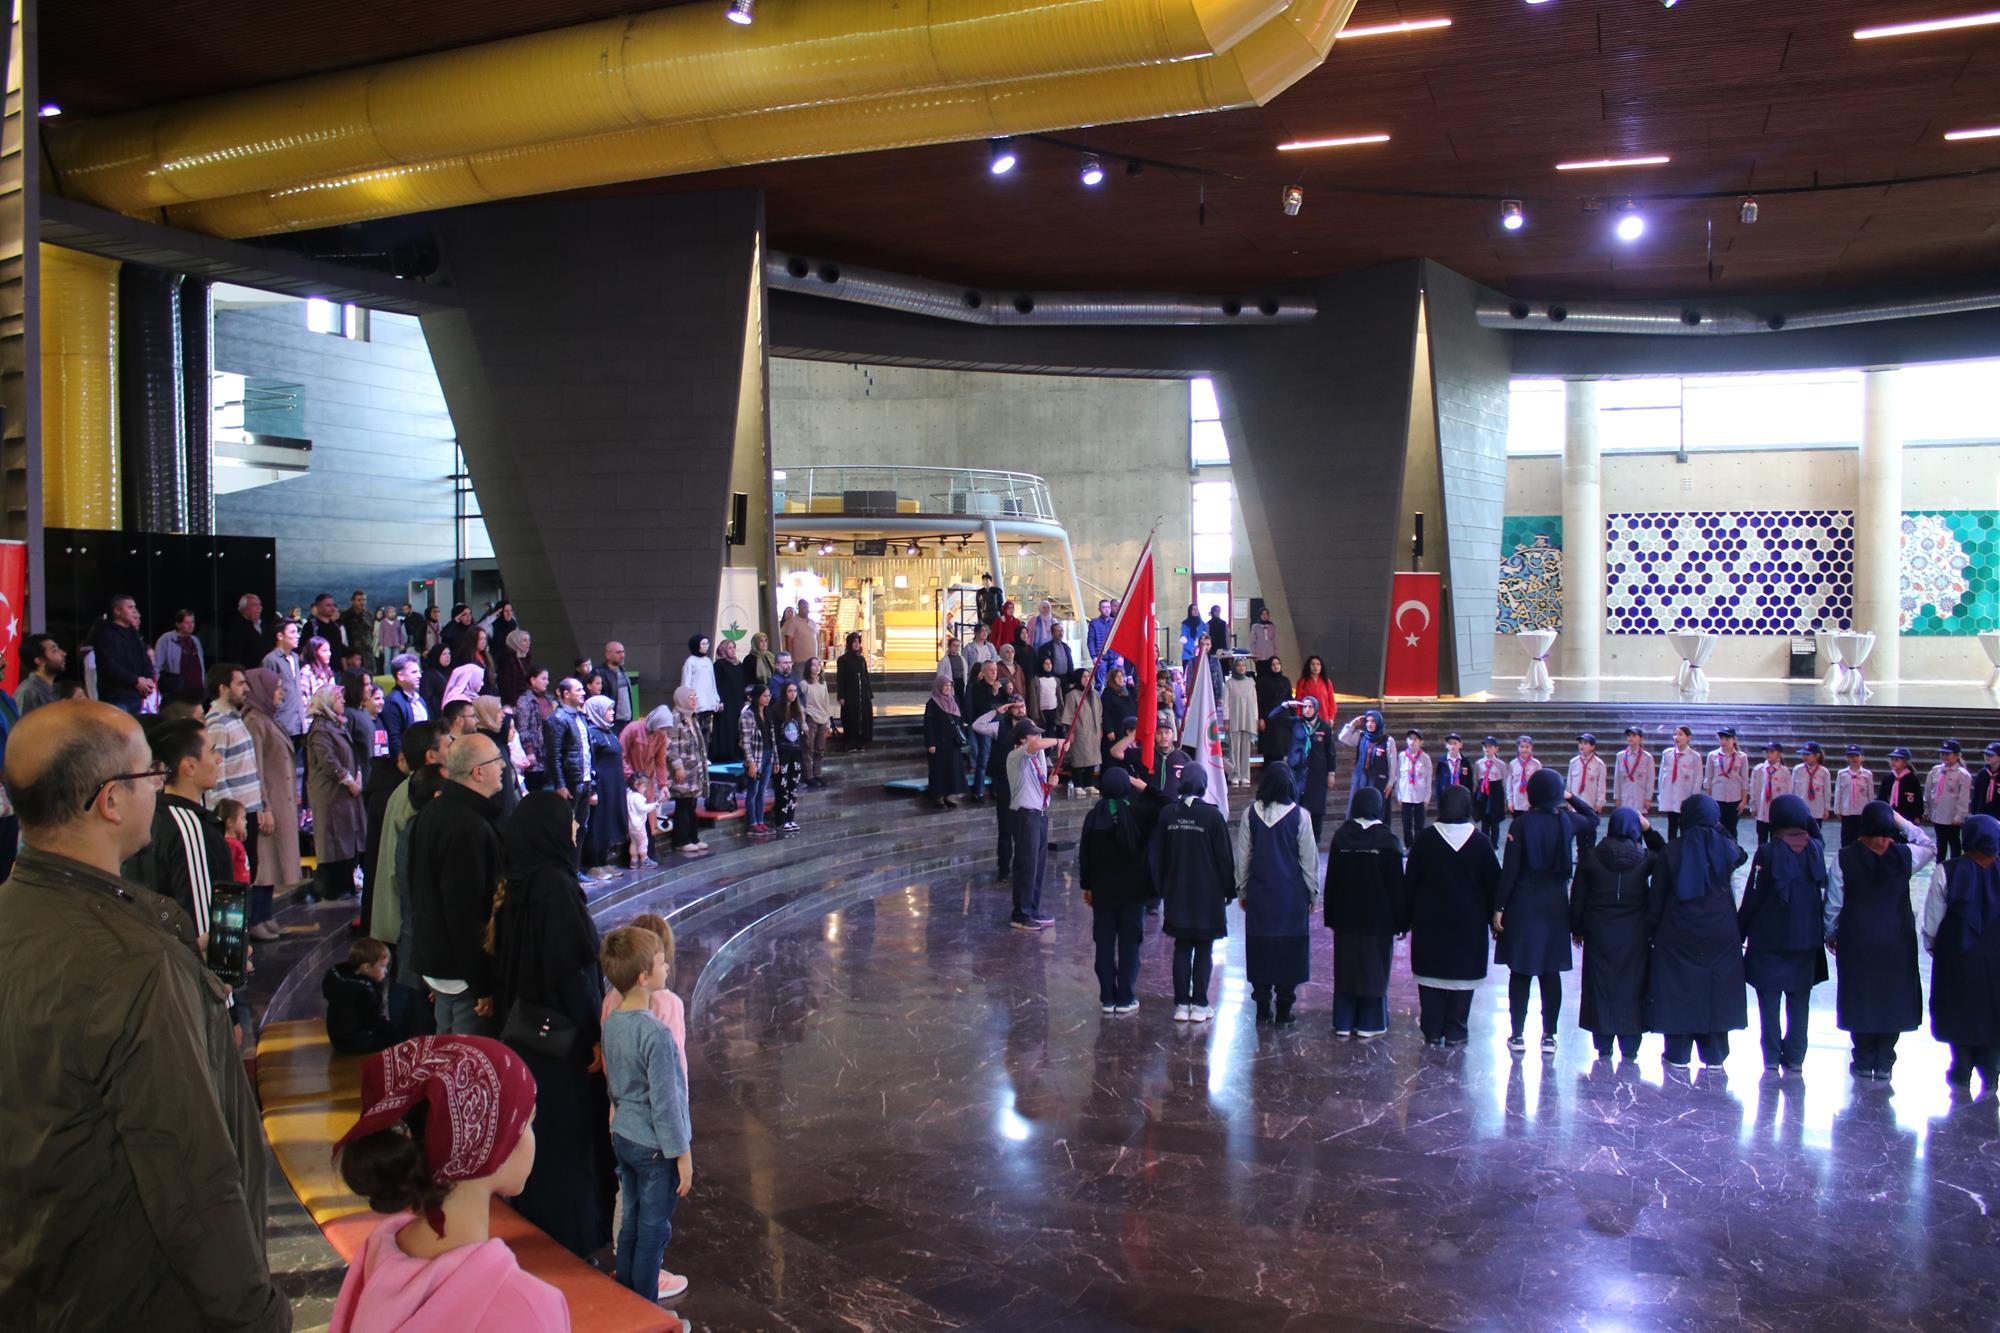 İzcilik açılış şenliği programı, Panorama 1326 Bursa Fetih Müzesi'nde gerçekleştirildi.